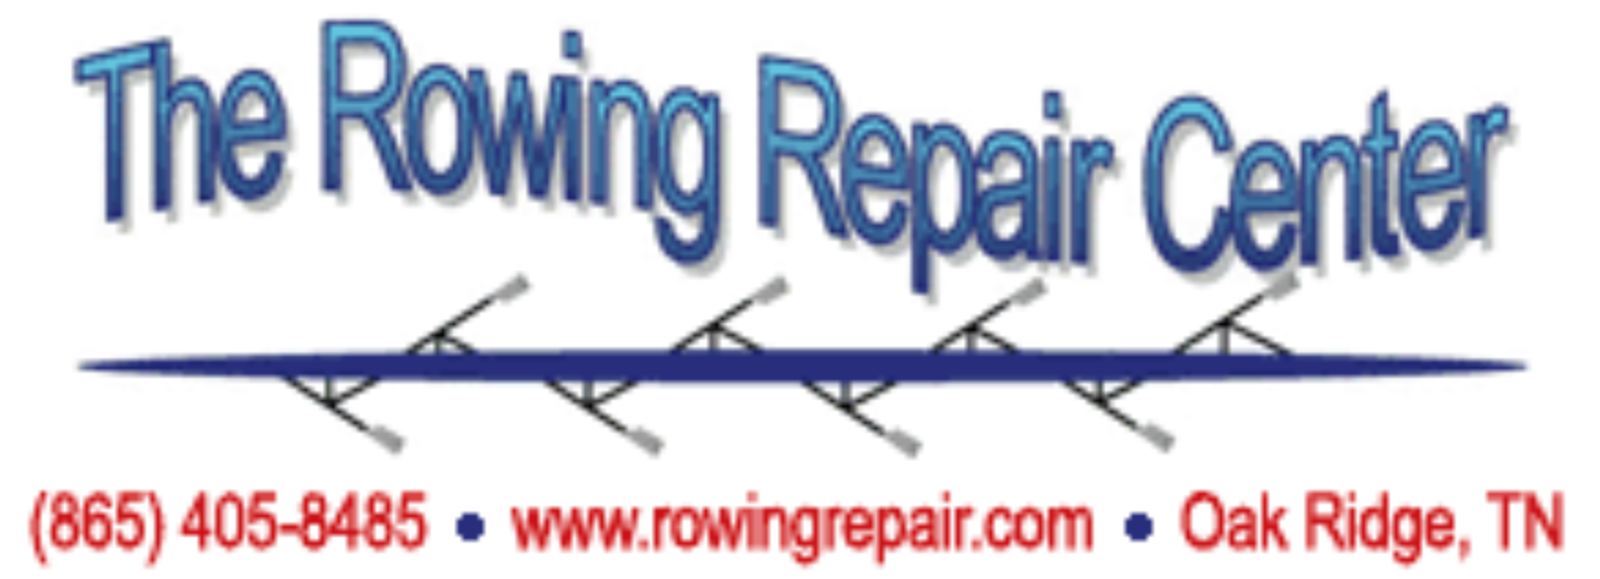 Image result for rowing repair center oak ridge